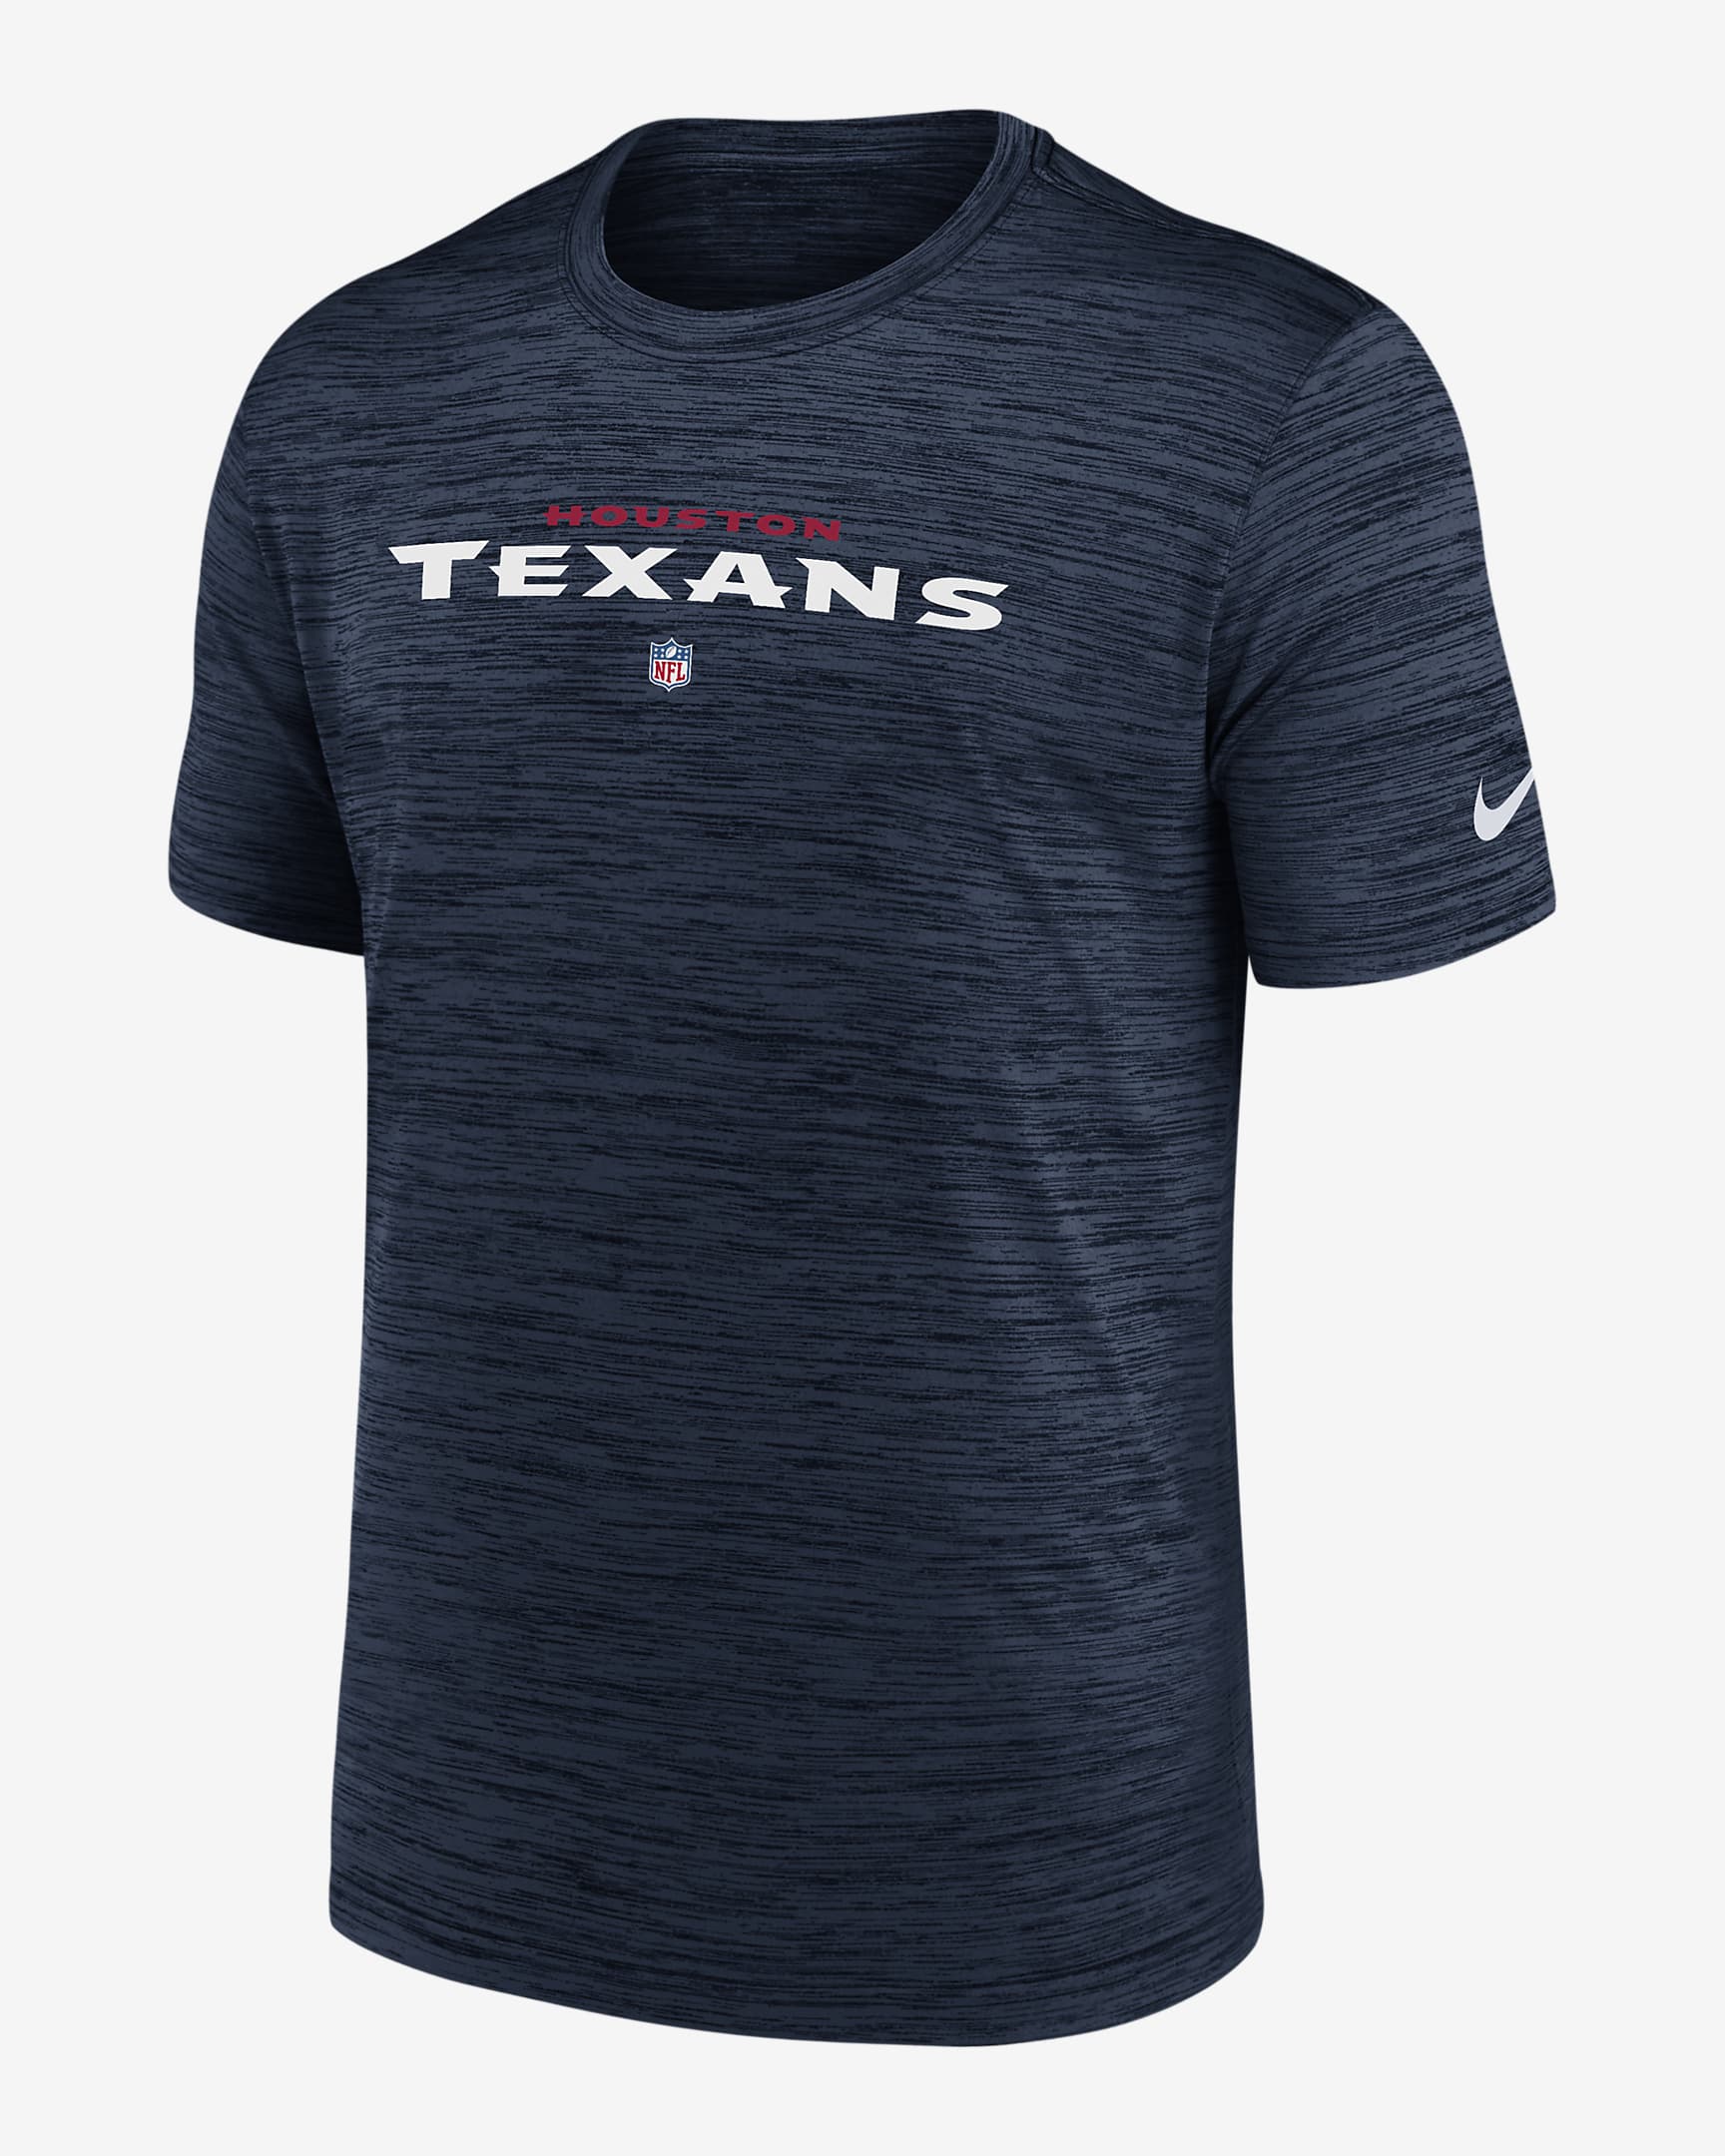 Nike Dri-FIT Sideline Velocity (NFL Houston Texans) Men's T-Shirt. Nike.com